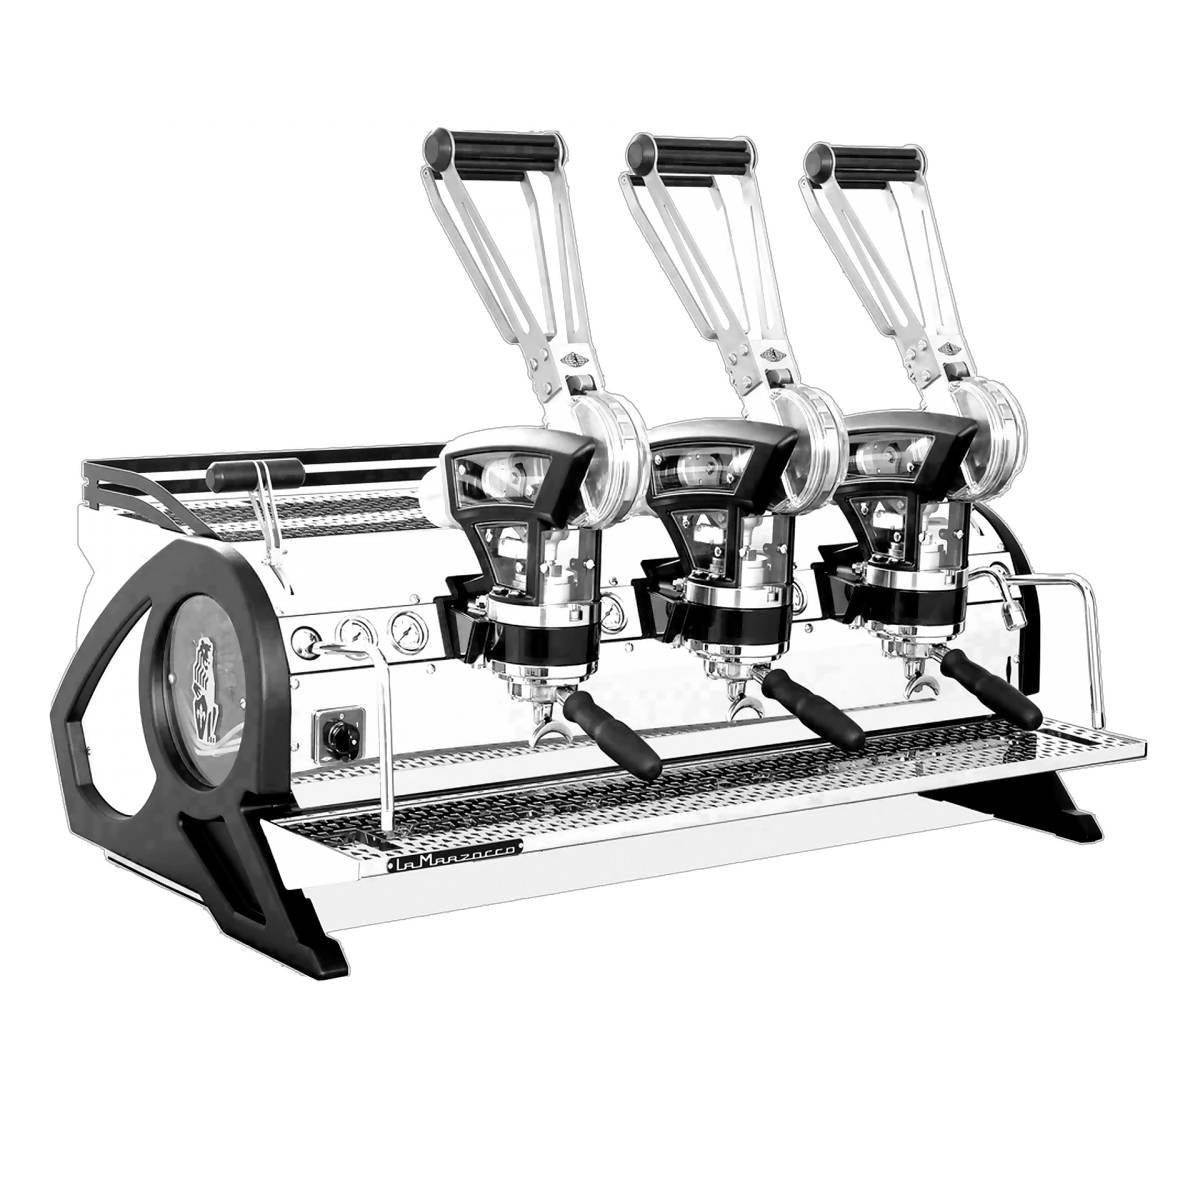 LA MARZOCCO Leva X Commercial Coffee Machine - BUNAMARKET